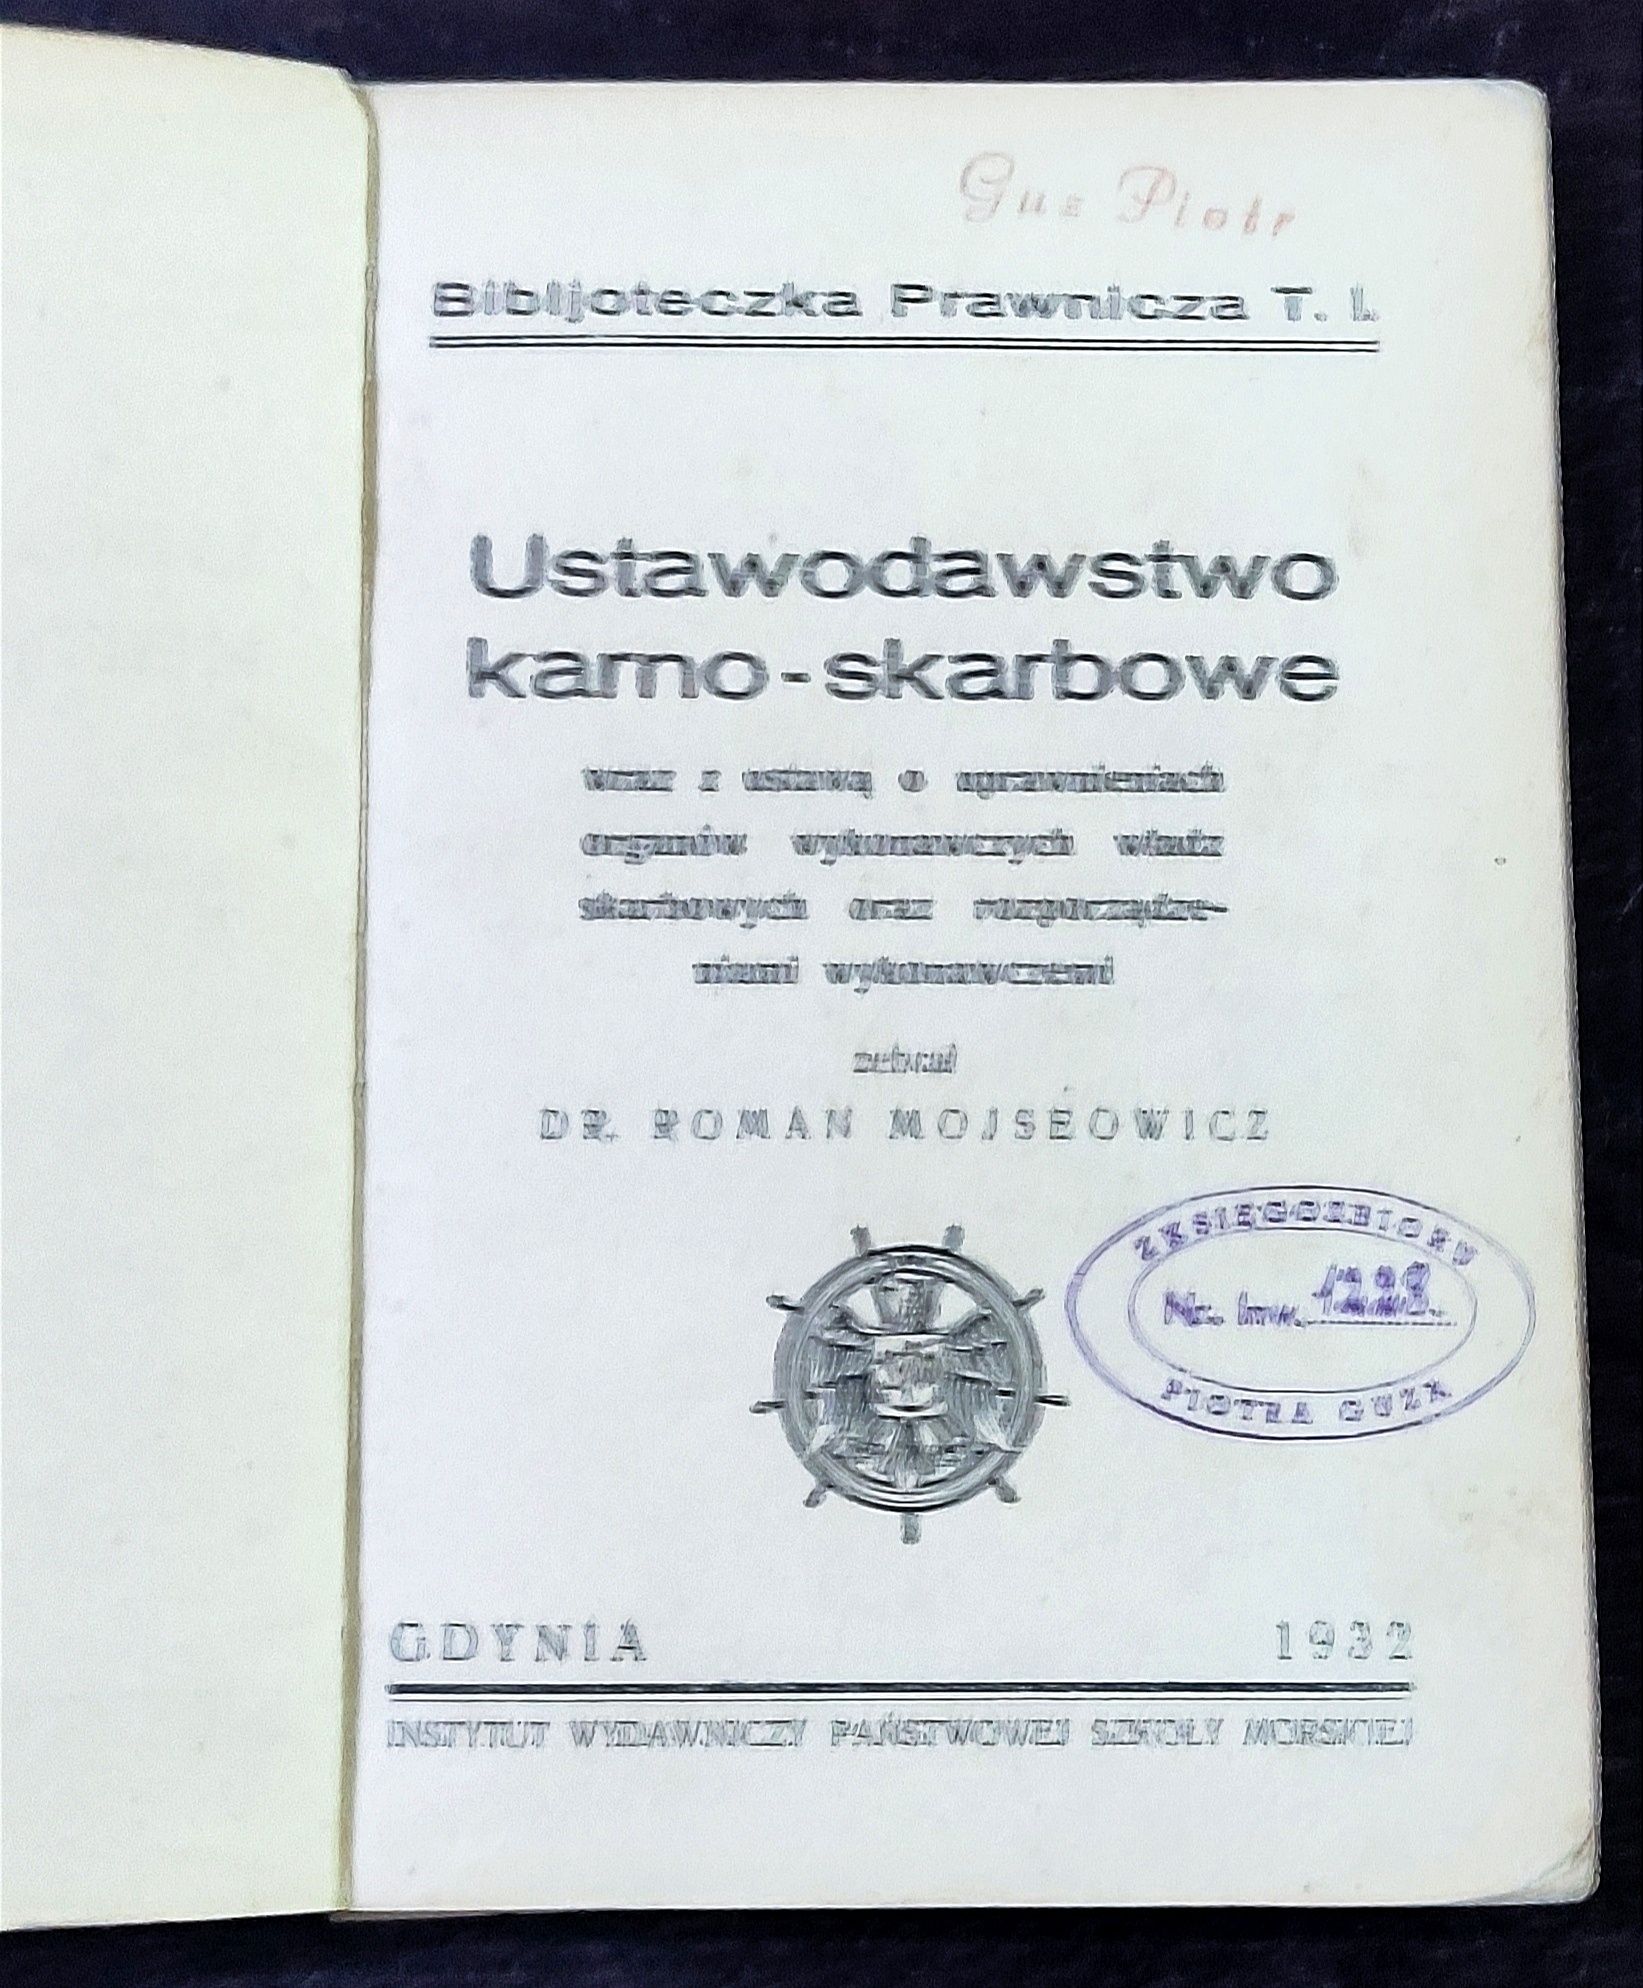 Ustawodawstwo Karno-Skarbowe 1932r Dr Roman Mojseowicz Gdynia 

Roman